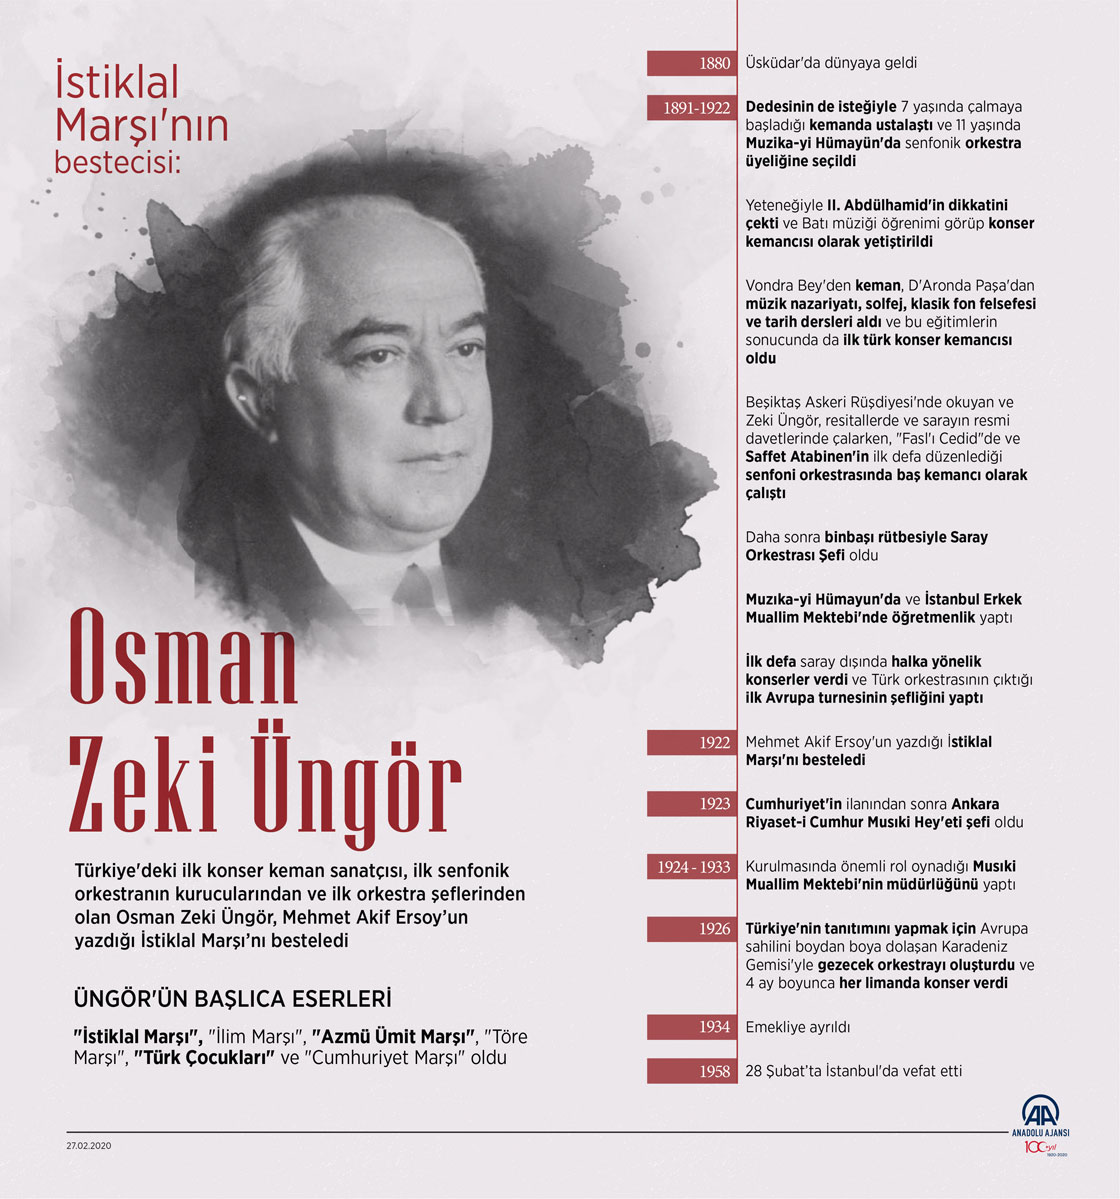 İstiklal Marşı'nın bestecisi: Osman Zeki Üngör